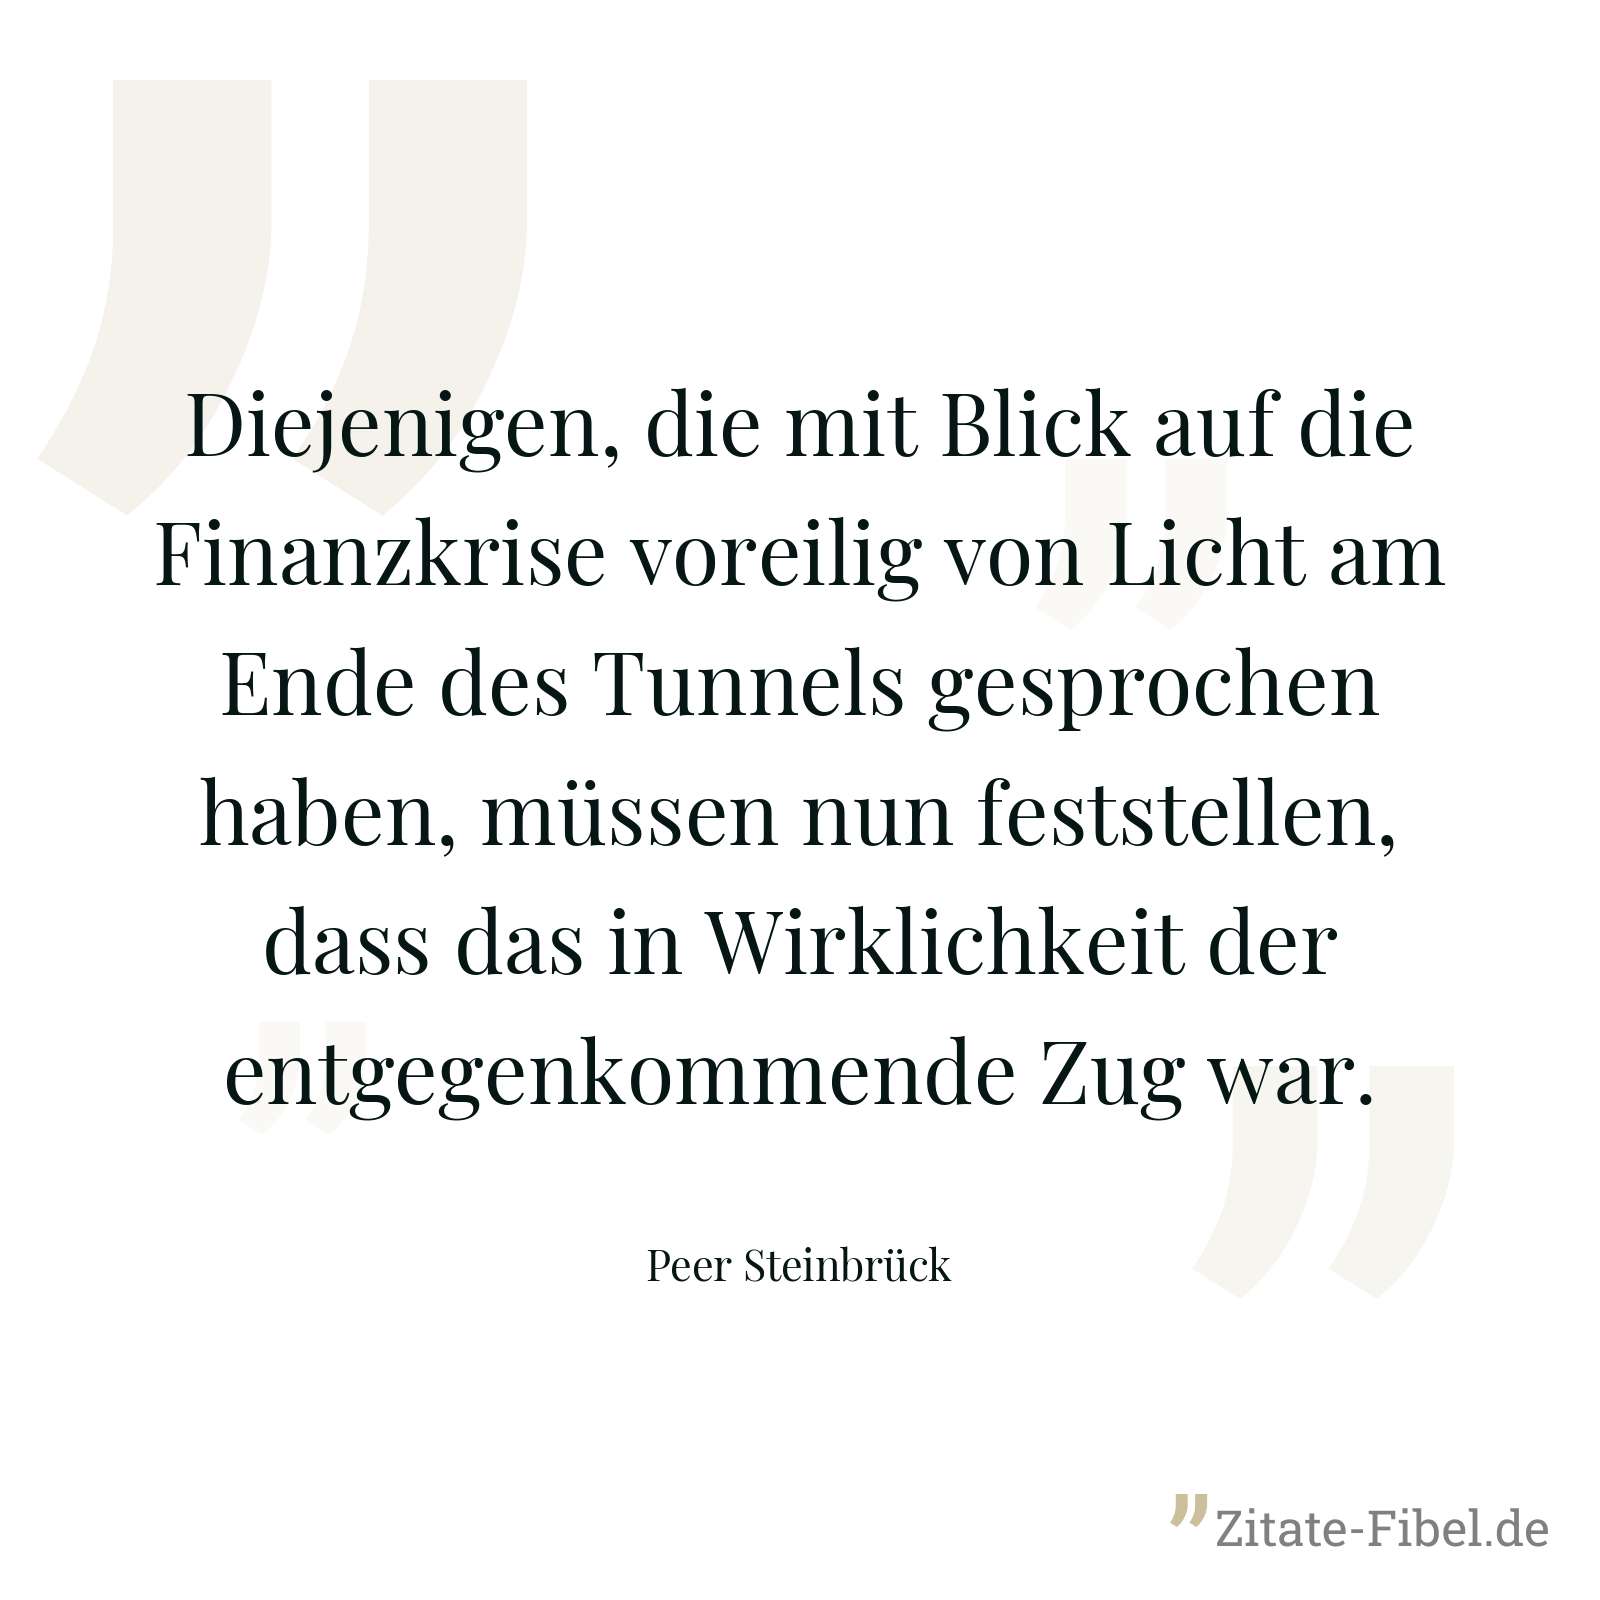 Diejenigen, die mit Blick auf die Finanzkrise voreilig von Licht am Ende des Tunnels gesprochen haben, müssen nun feststellen, dass das in Wirklichkeit der entgegenkommende Zug war. - Peer Steinbrück